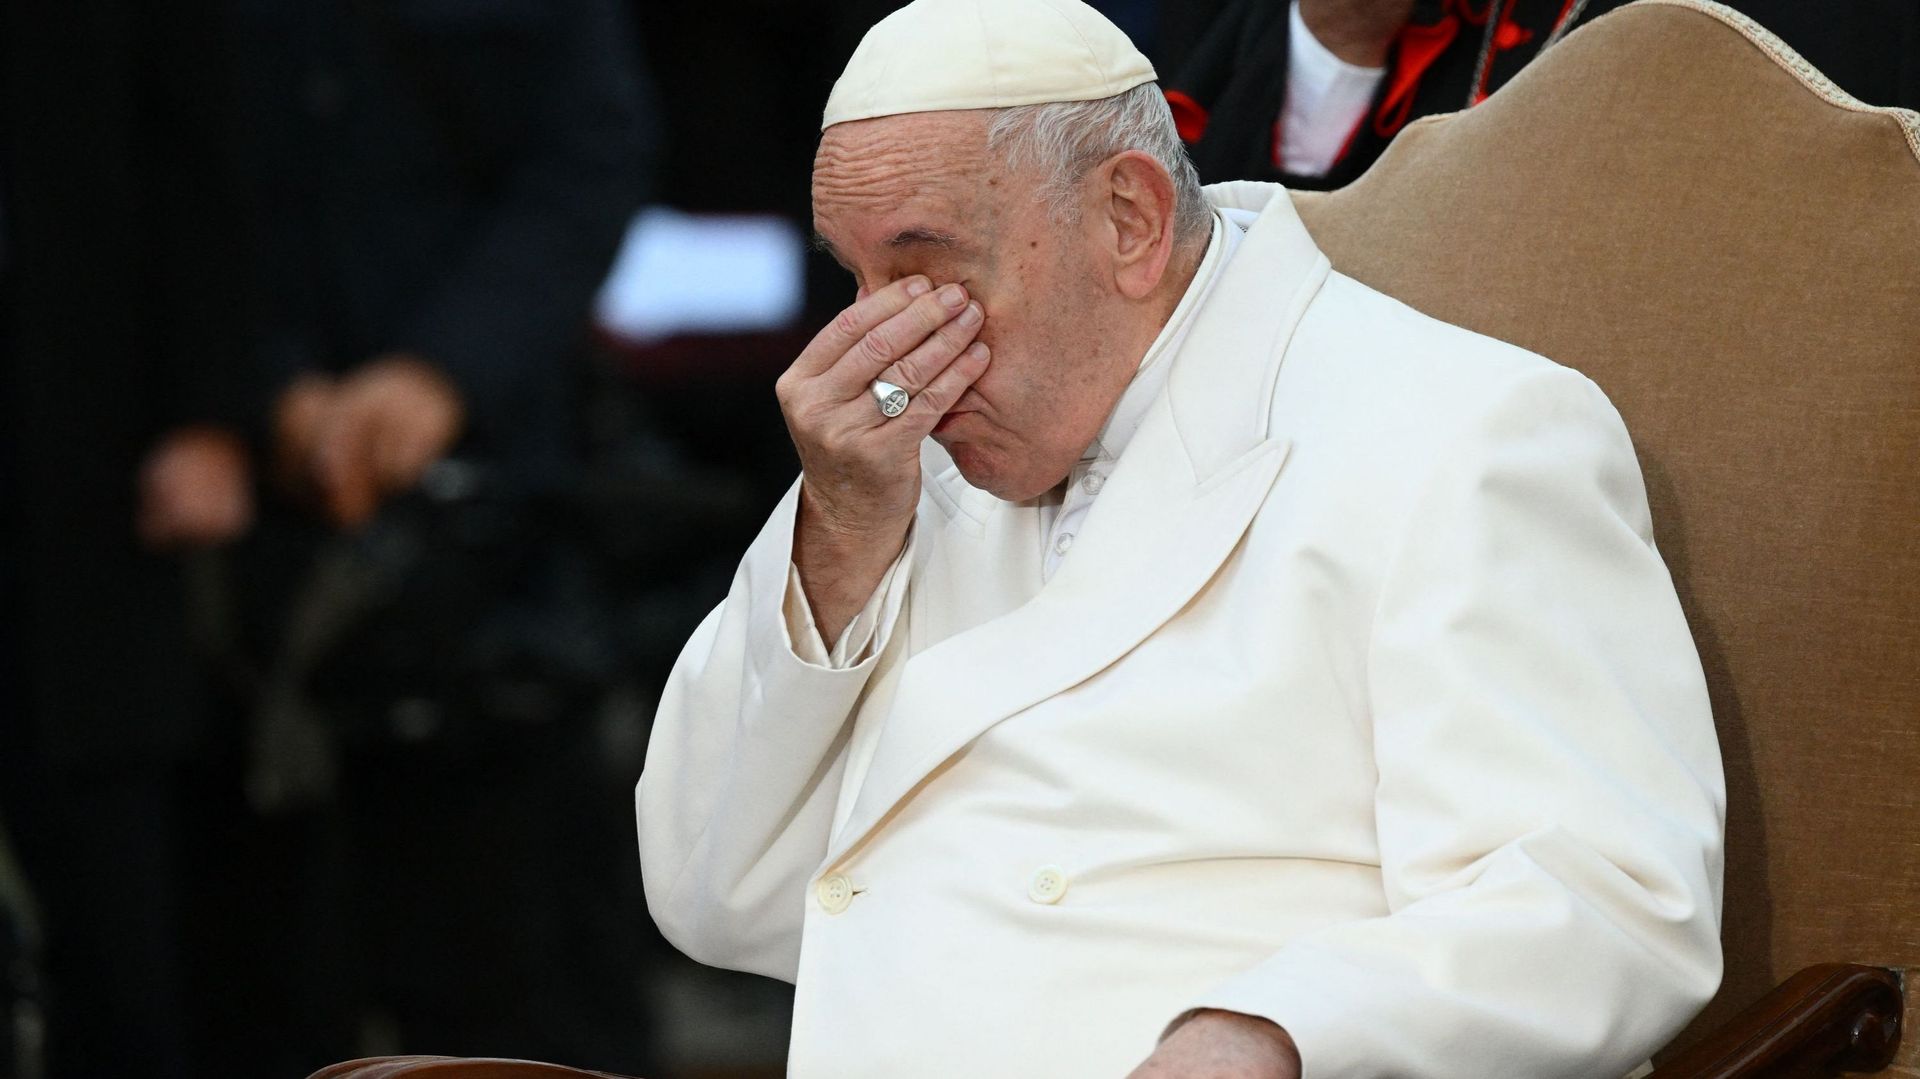 Le pape pleure en public en évoquant l’Ukraine "martyrisée".